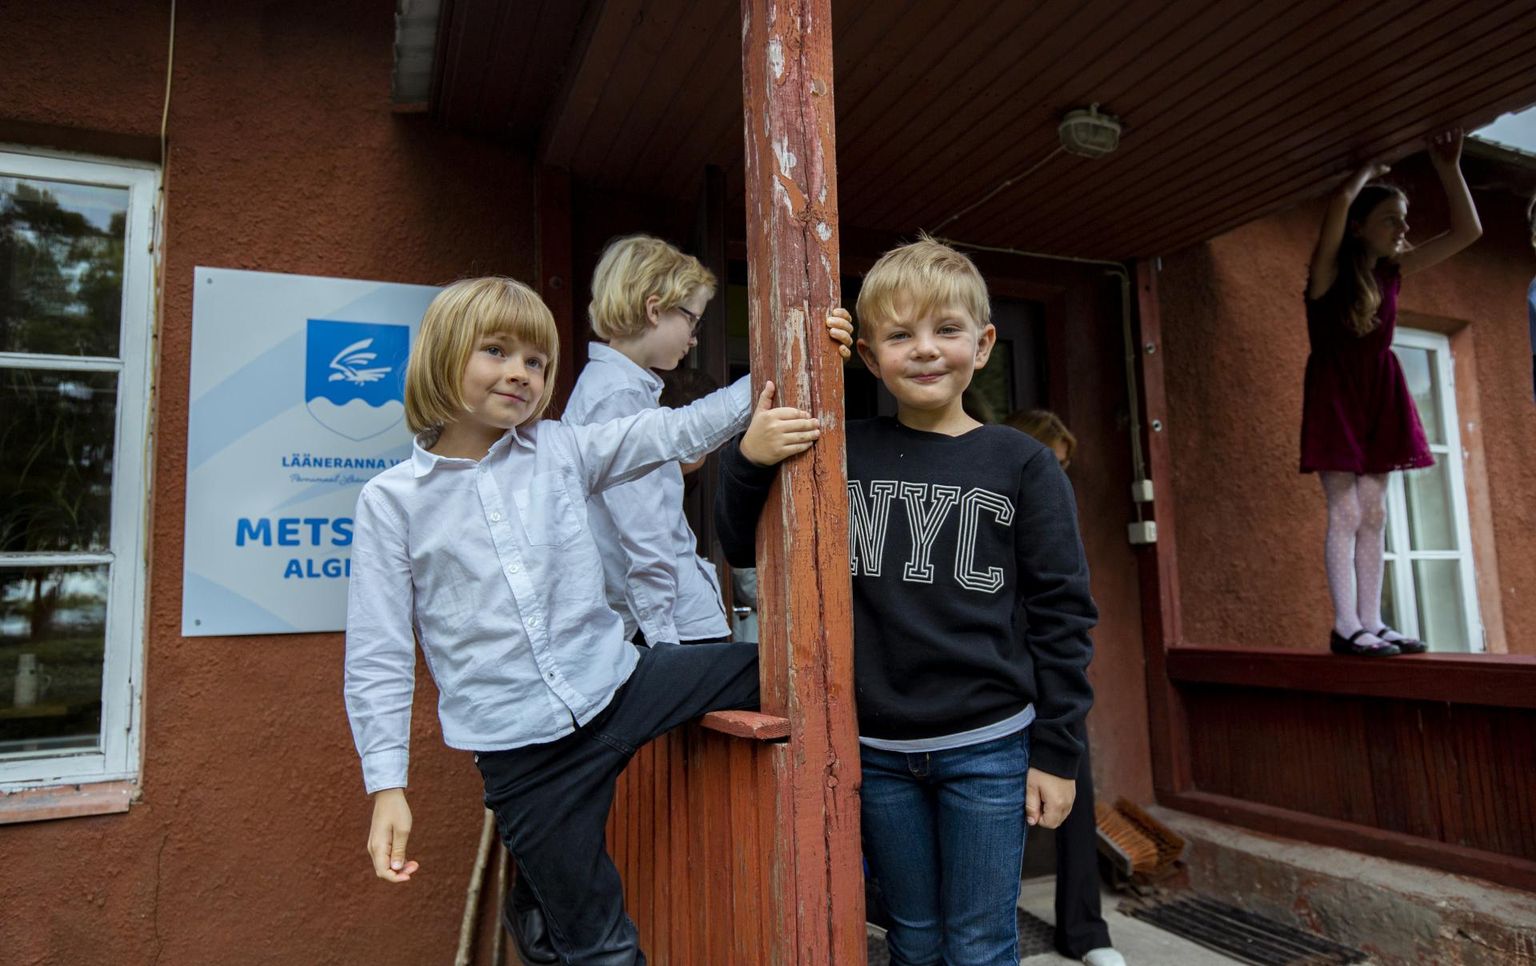 Metsküla algkool asub Pärnumaal Lääneranna vallas Matsalu lahe lähedal. Nädal tagasi alustas seal kooliteed viis õpilast, kokku omandab tsaari­ajal ehitatud hoones teadmisi 22 õppurit.